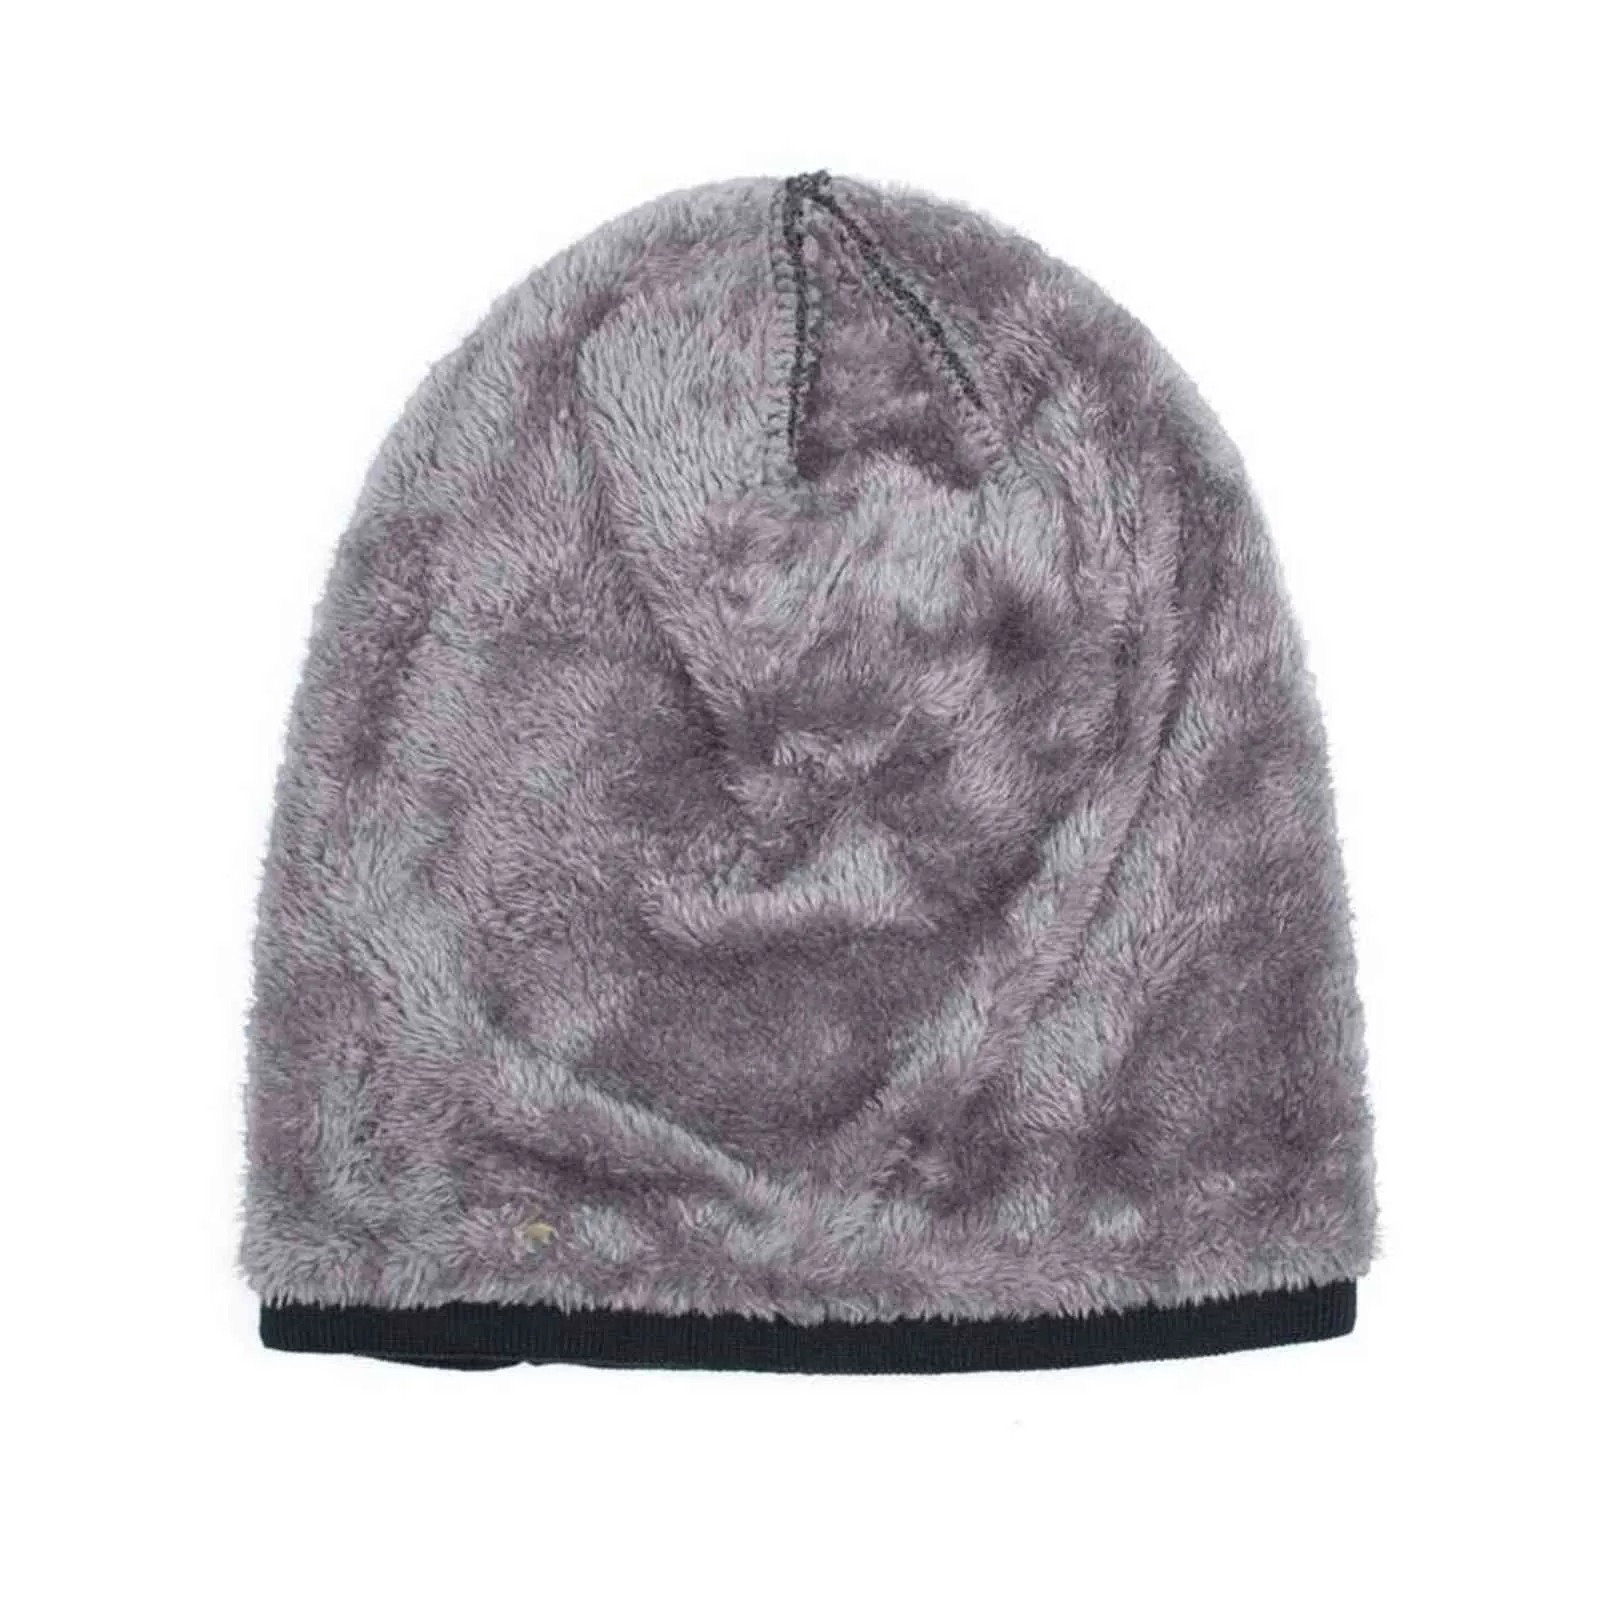 1 ADET erkek Kış Slouchy Bere Sıcak Polar Çizgili Kafatası Kap Baggy Kablo Örgü Şapka Kış Sıcak Şapka Katı Gorros Aksesuarları Y21111